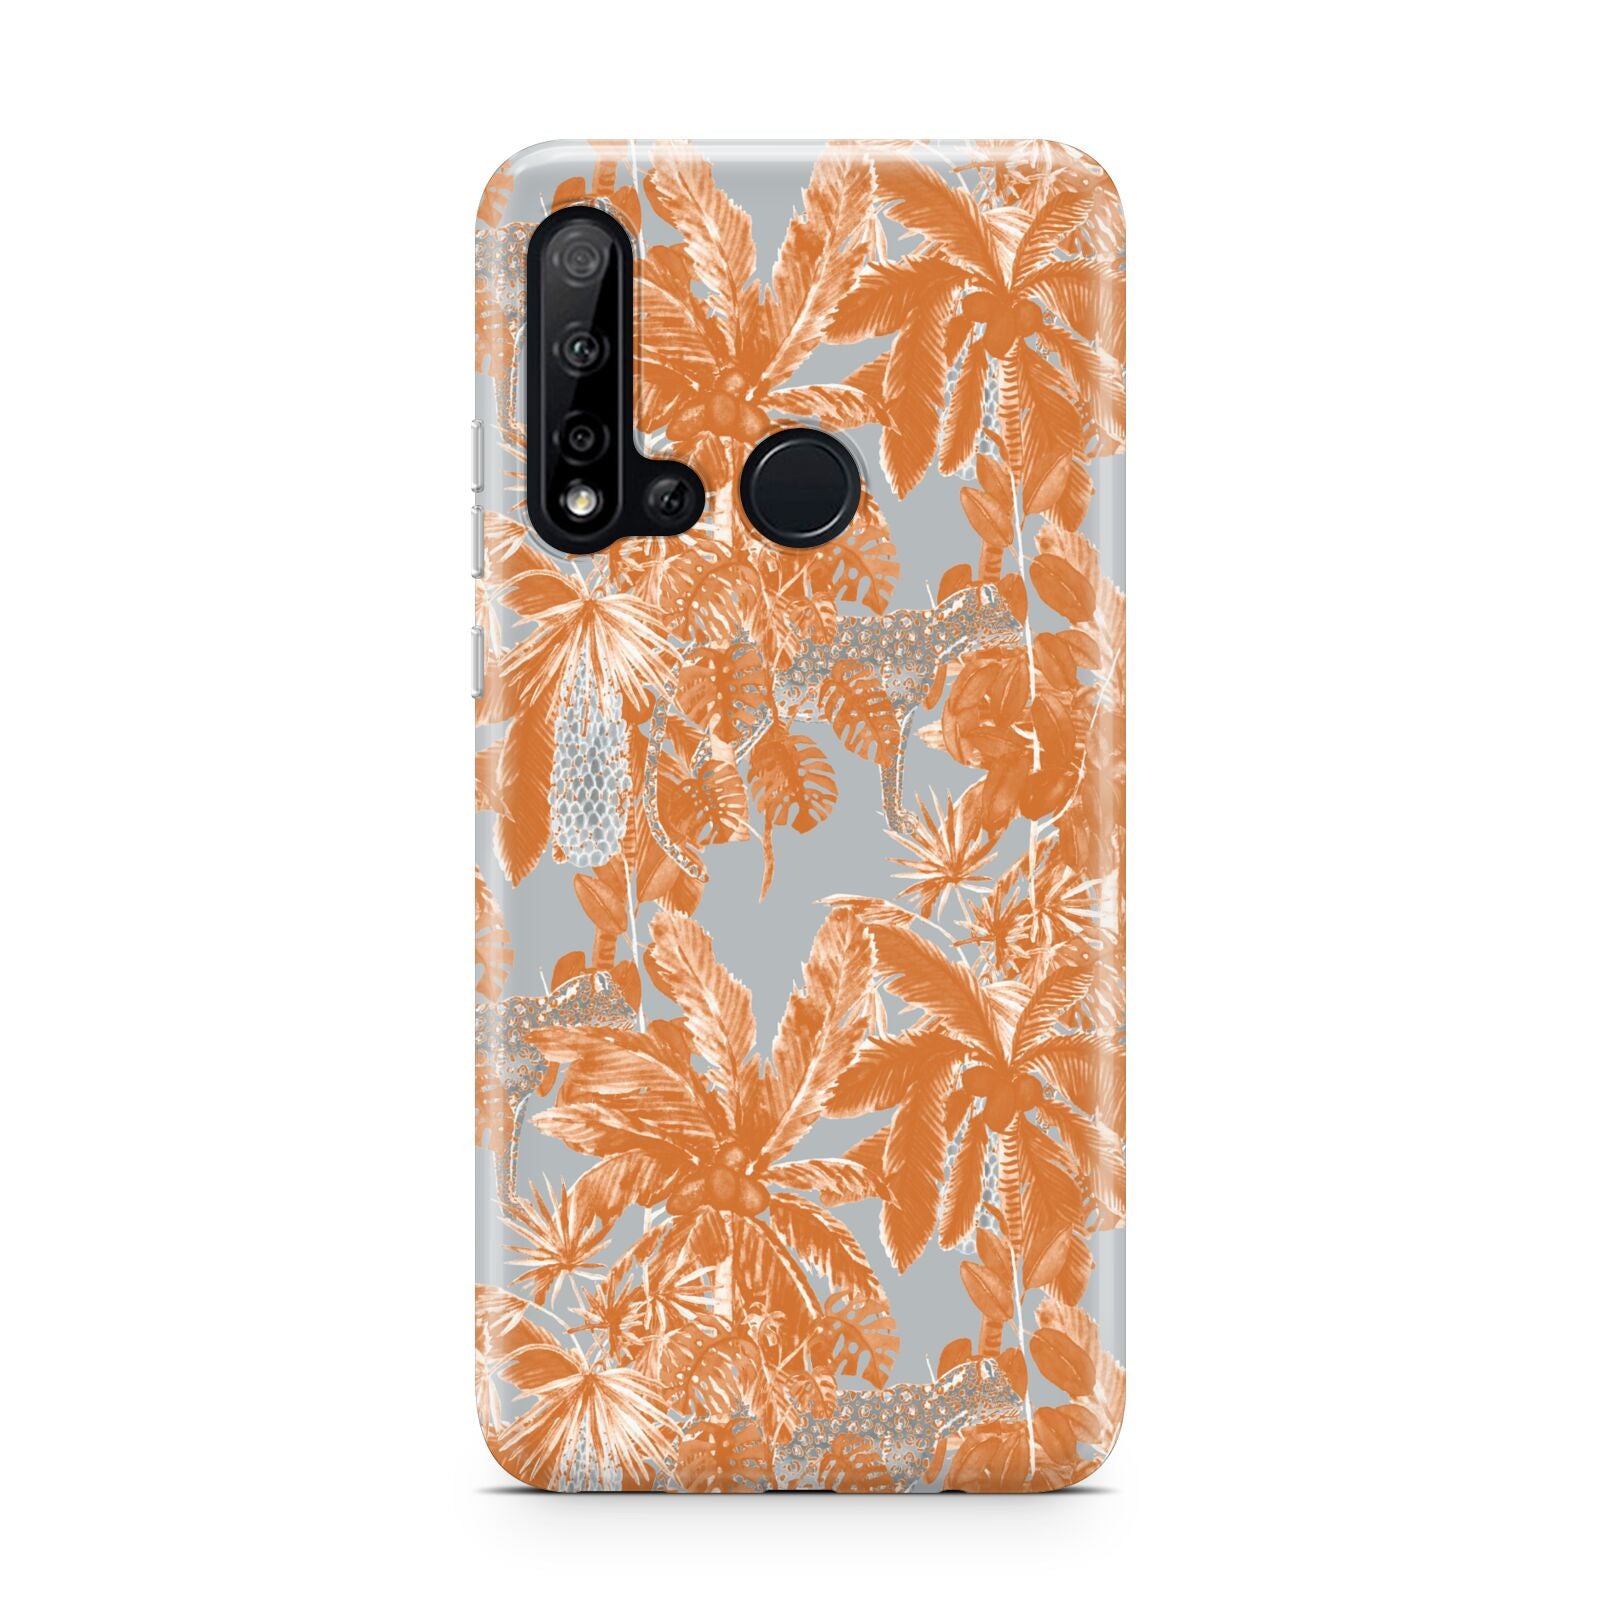 Tropical Huawei P20 Lite 5G Phone Case